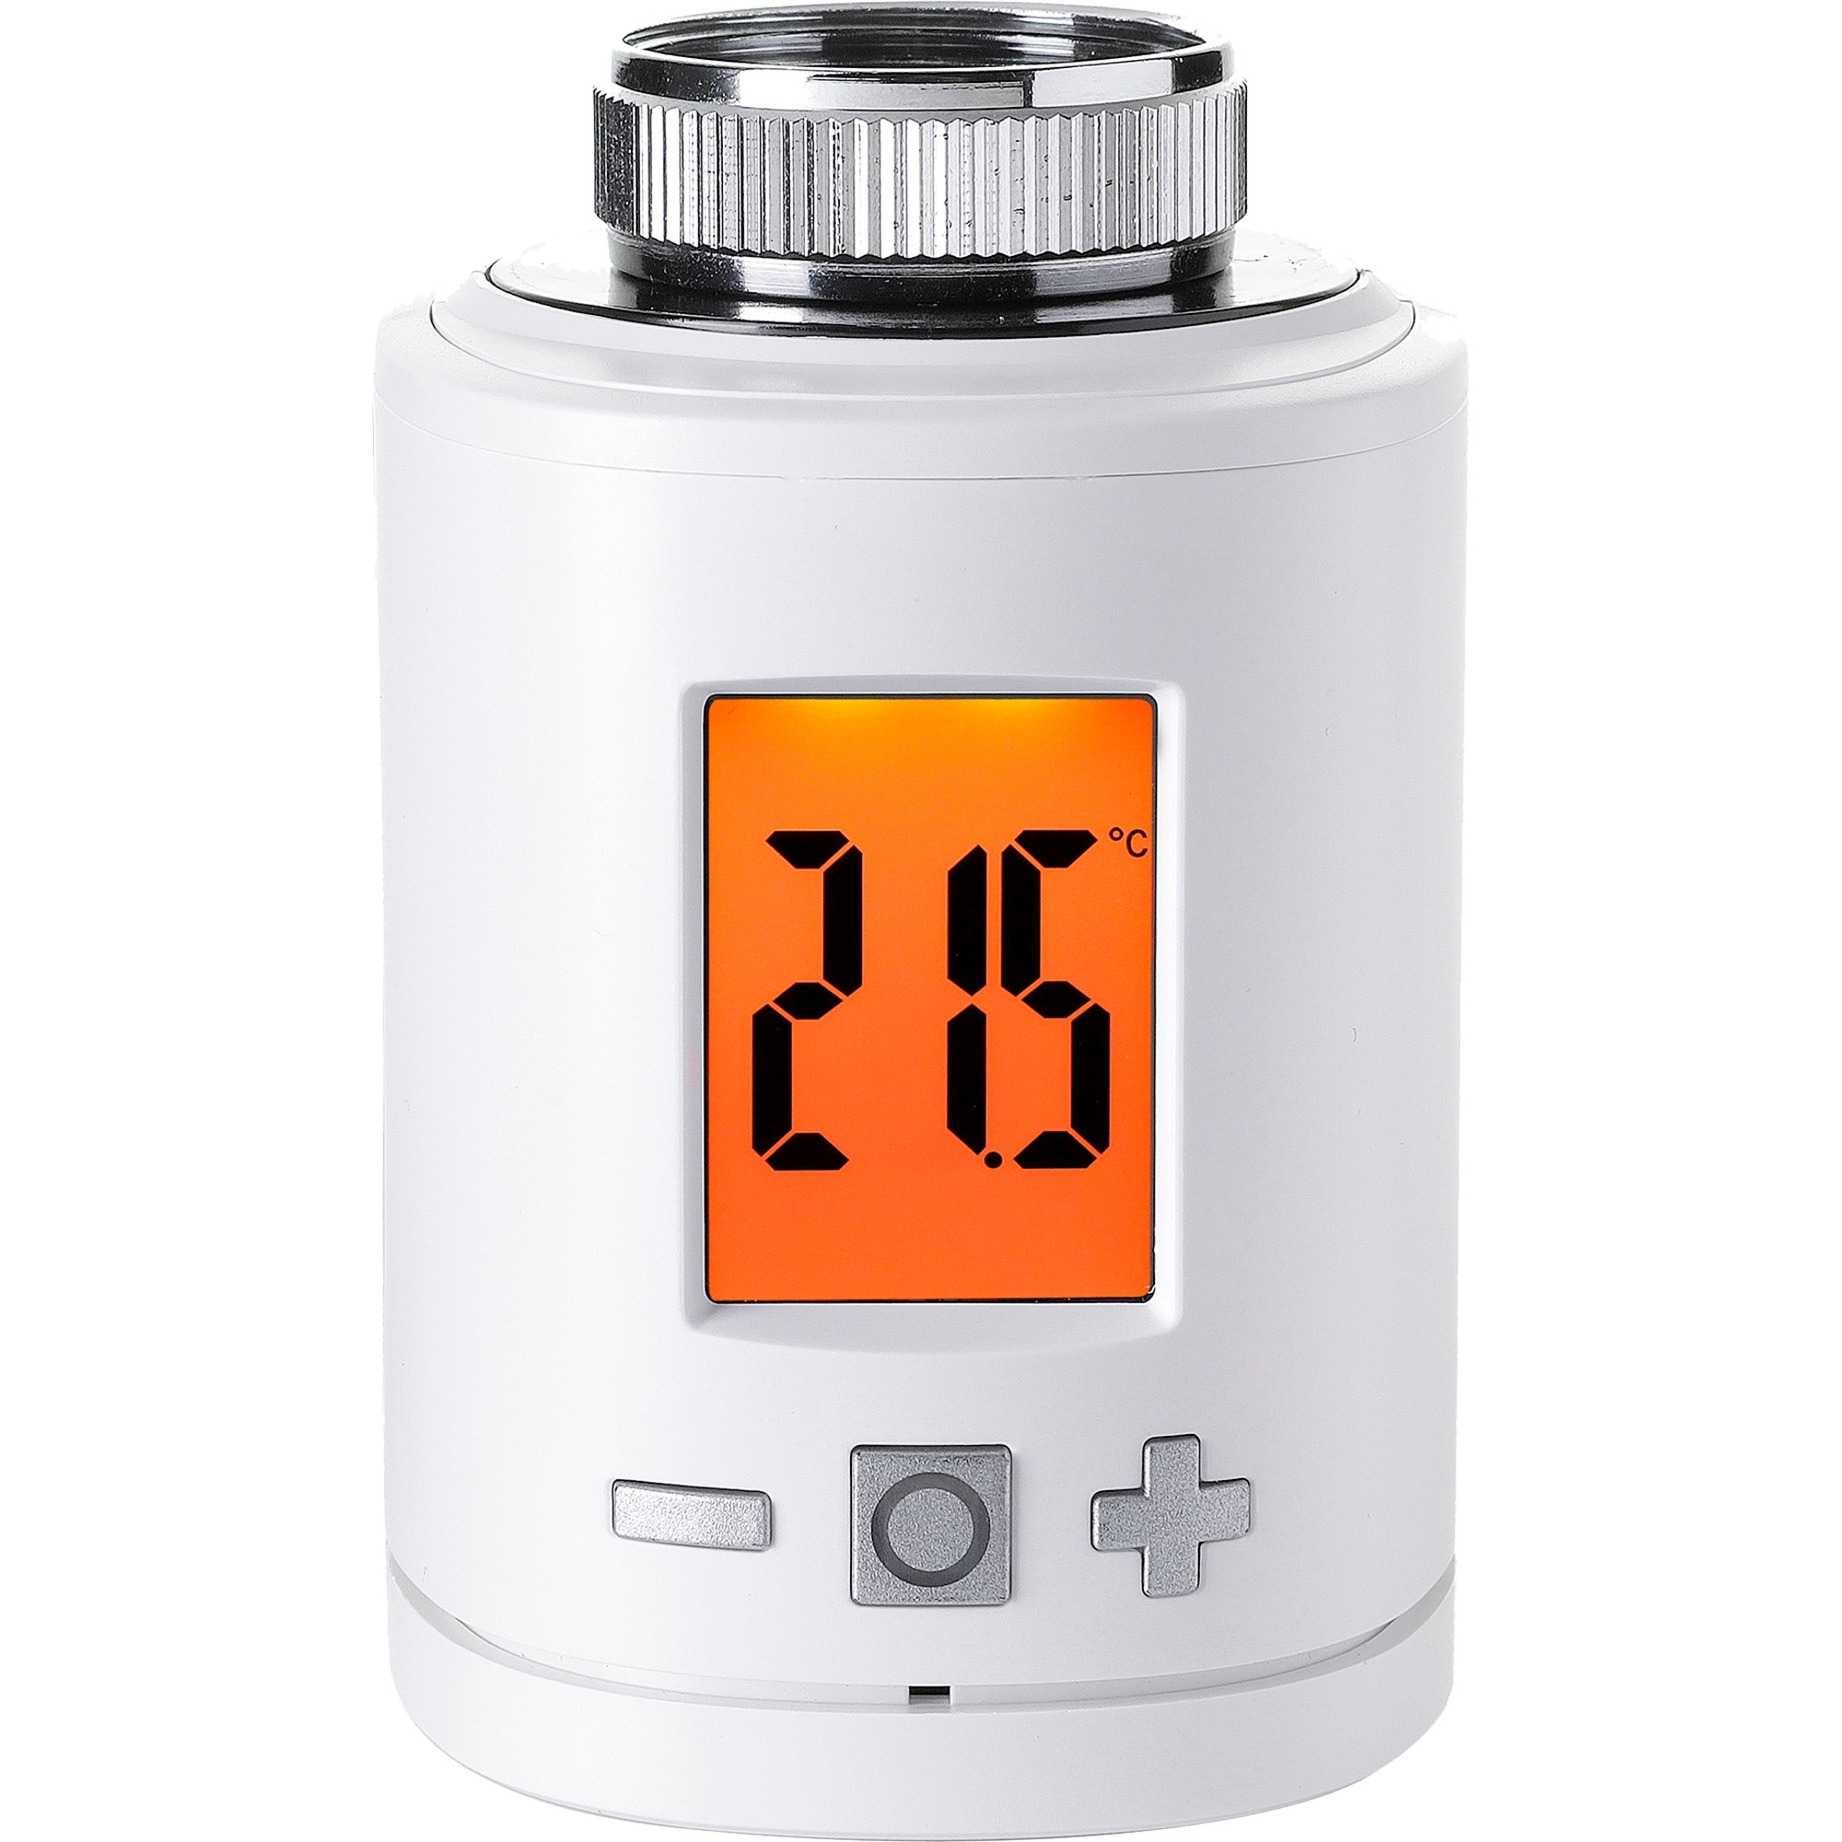 Heizkörper-Thermostat smart, Heizungsthermostat von HOMEPILOT